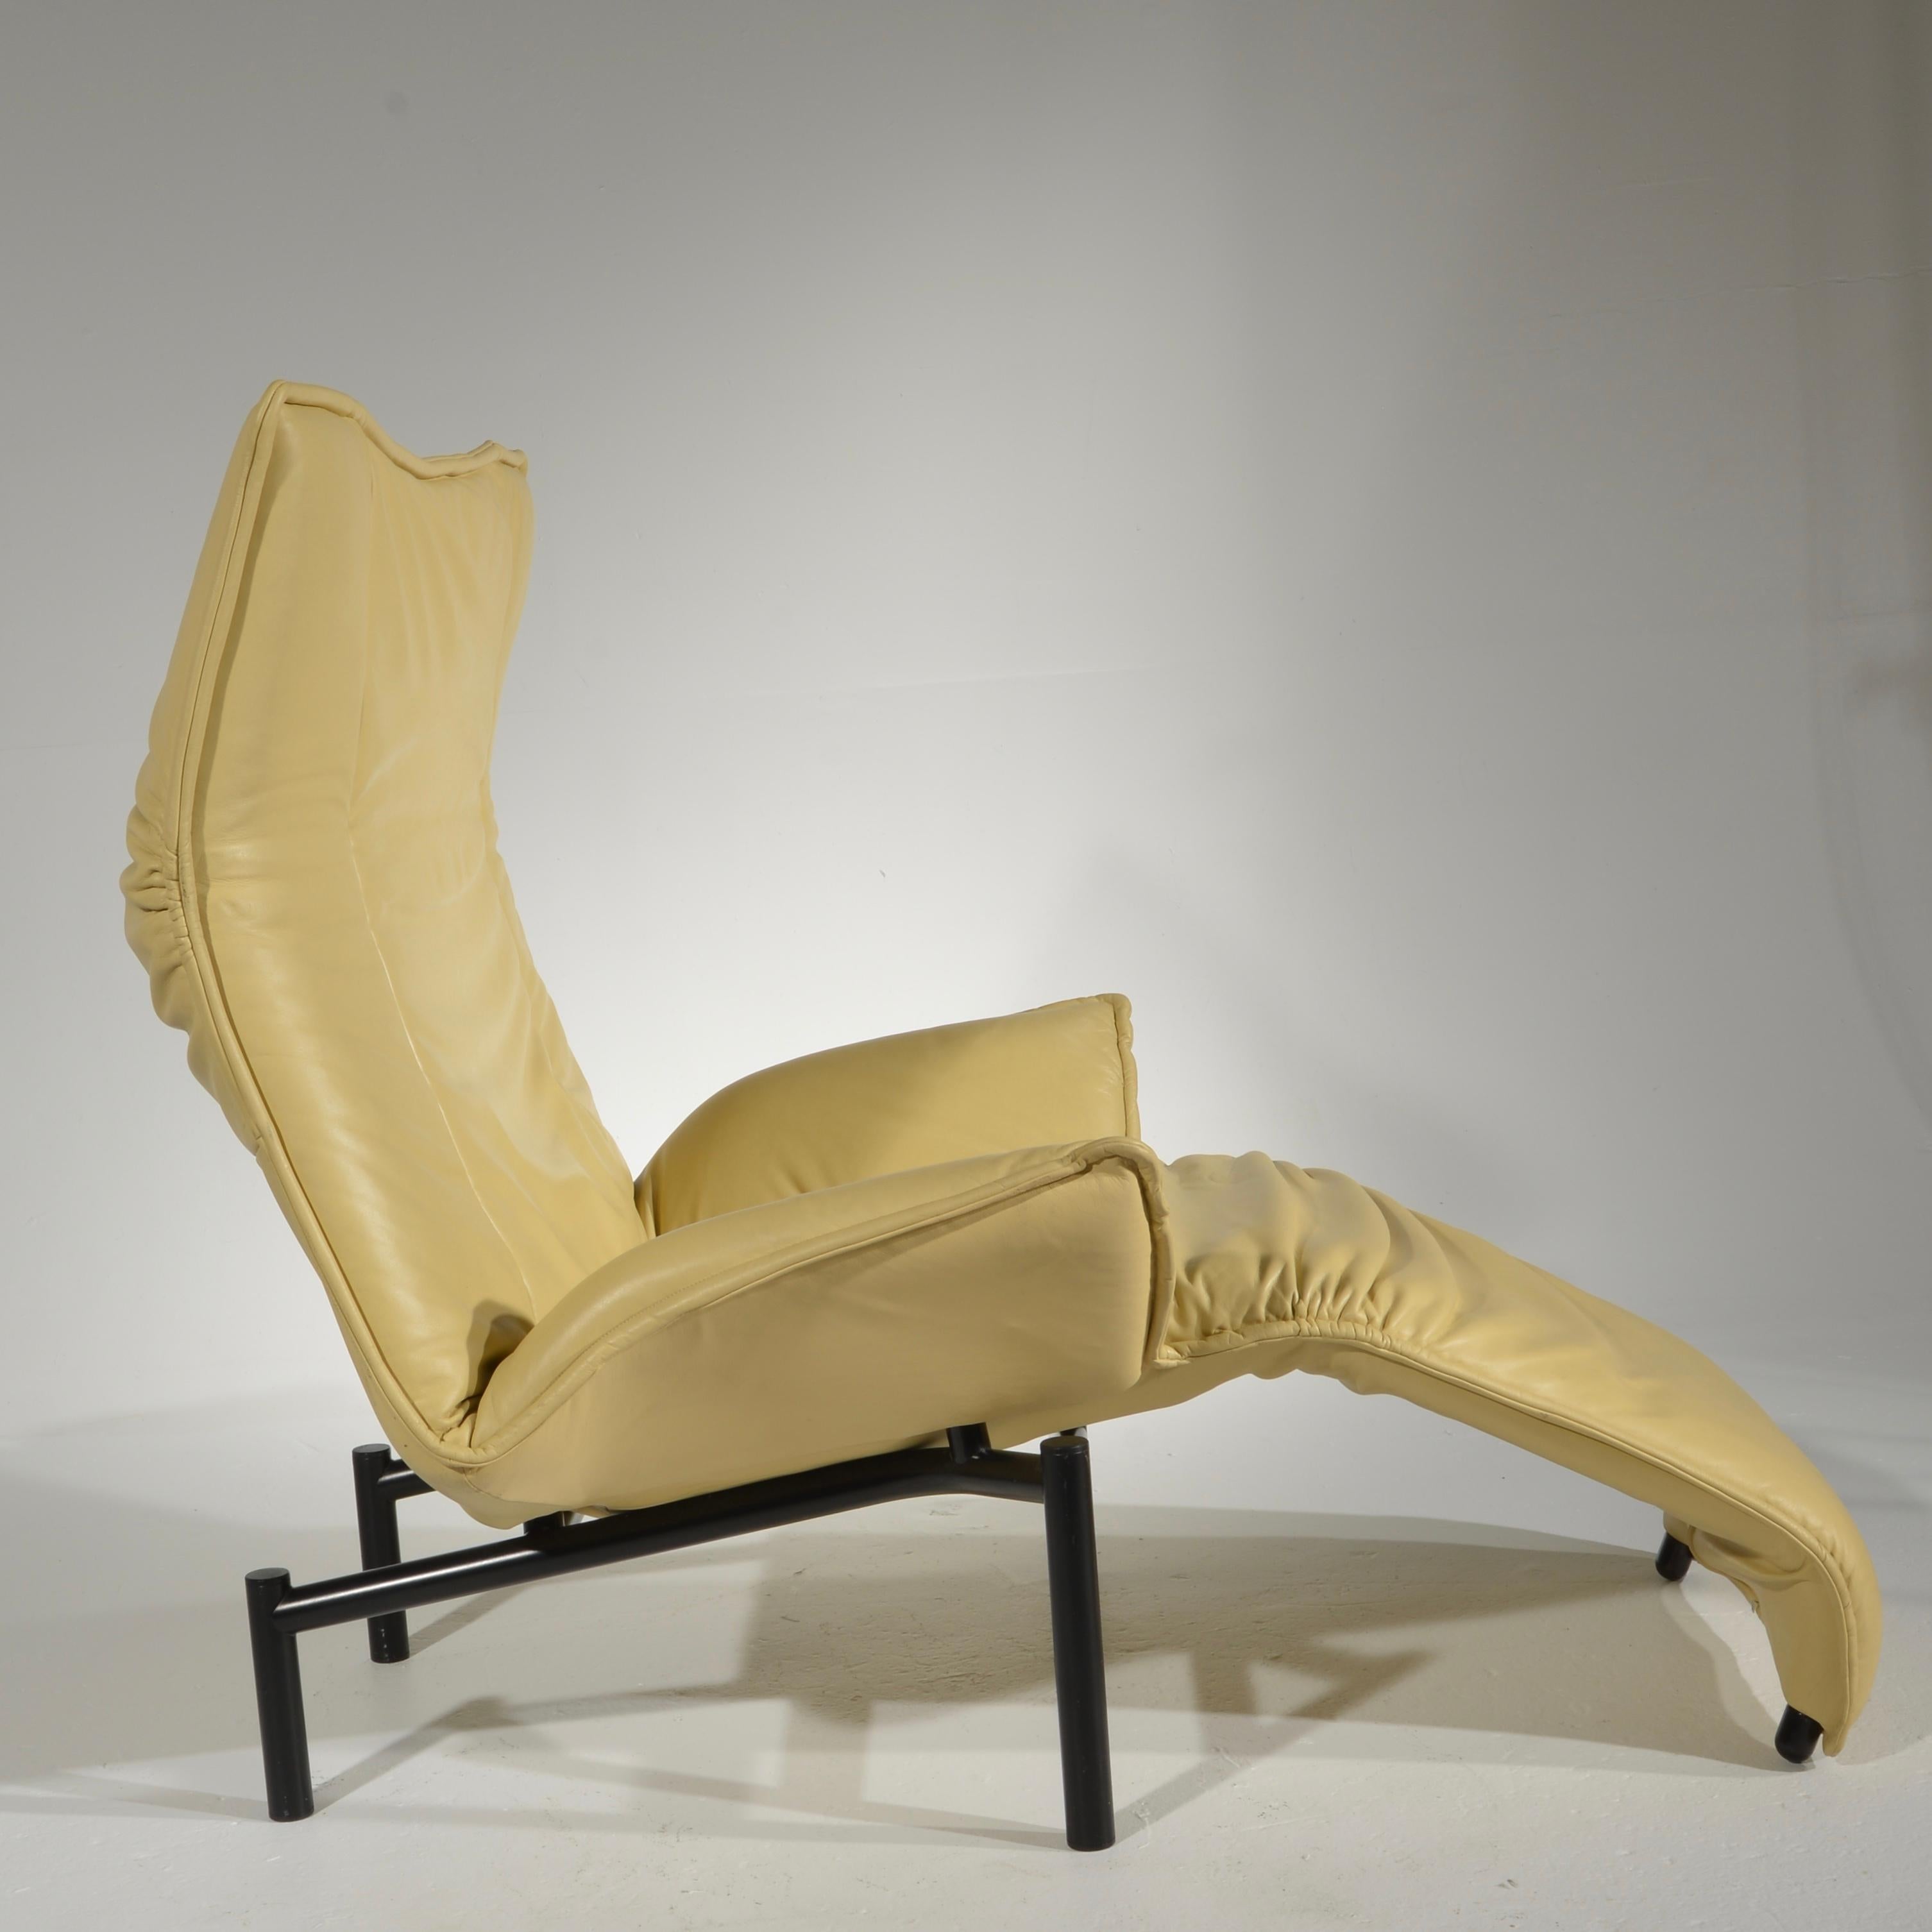 Late 20th Century Veranda Lounge Chair by Vico Magistretti for Cassina